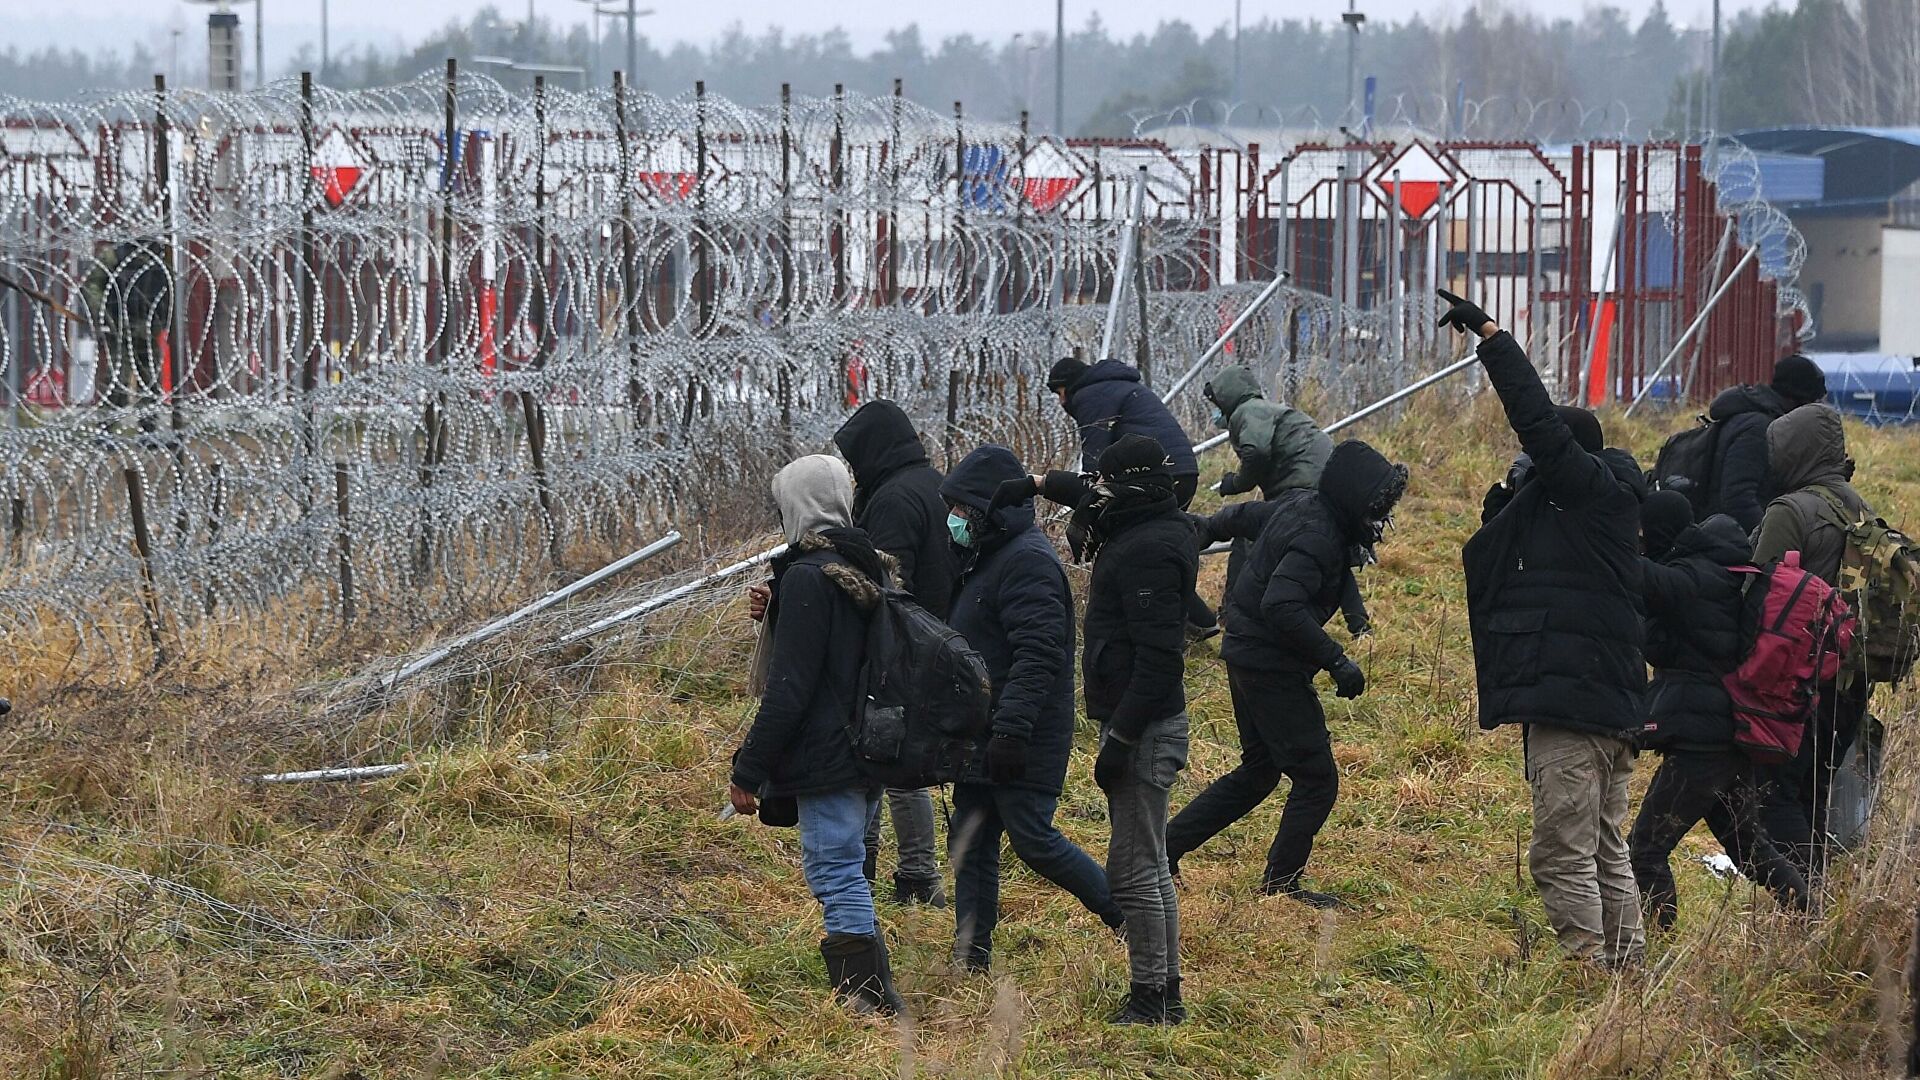 Граница белоруссия польша сегодня. Польская граница с Белоруссией мигранты. Заграждения на границе с Украиной. Мигранты на границе с Польшей. Беженцы на границе Белоруссии и Польши 2021.